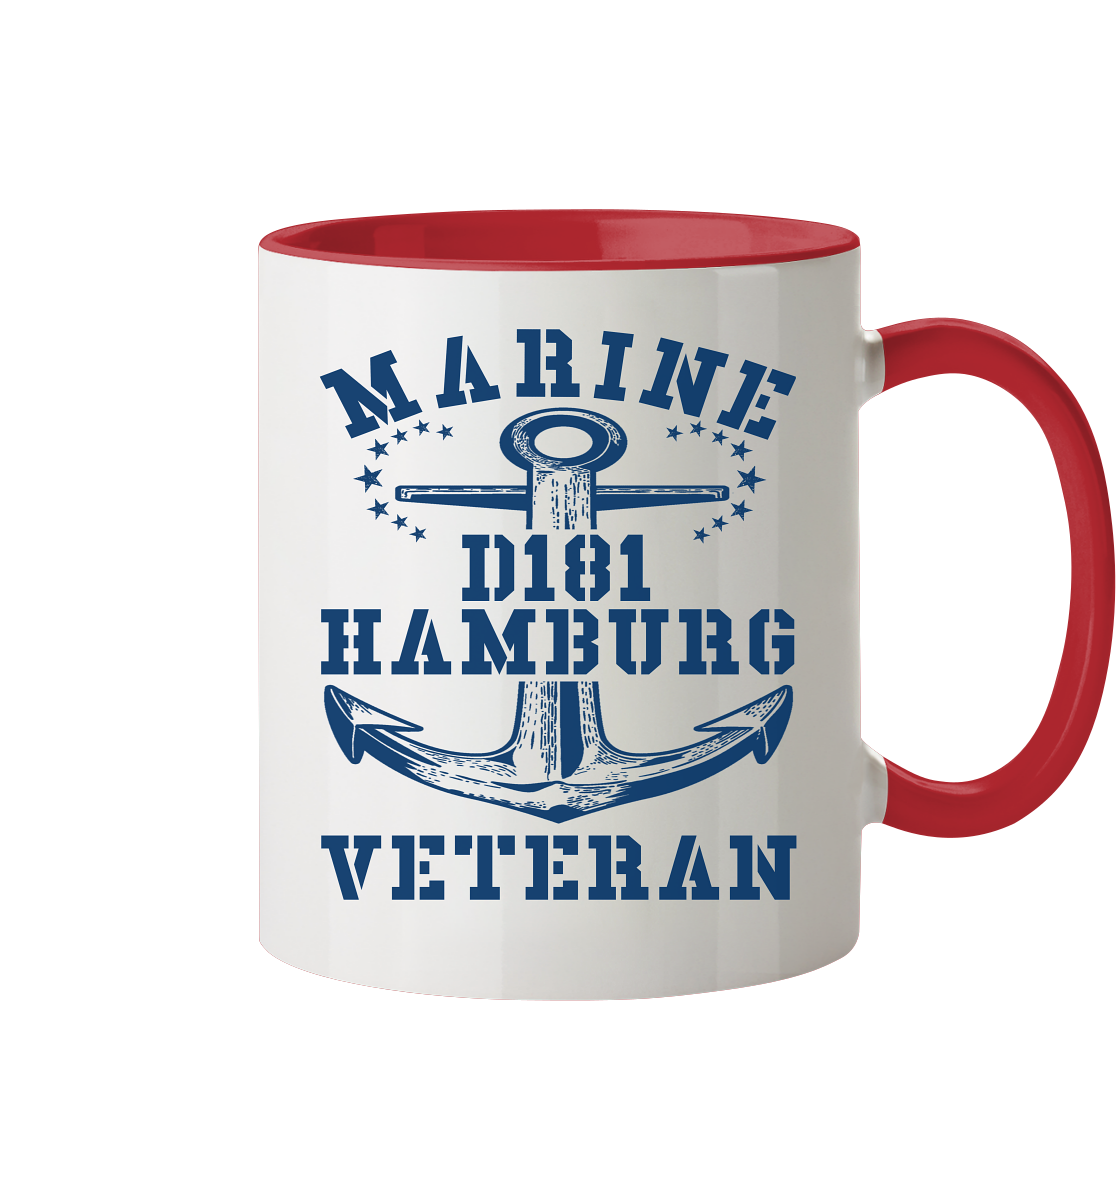 Zerstörer D181 HAMBURG Marine Veteran - Tasse zweifarbig